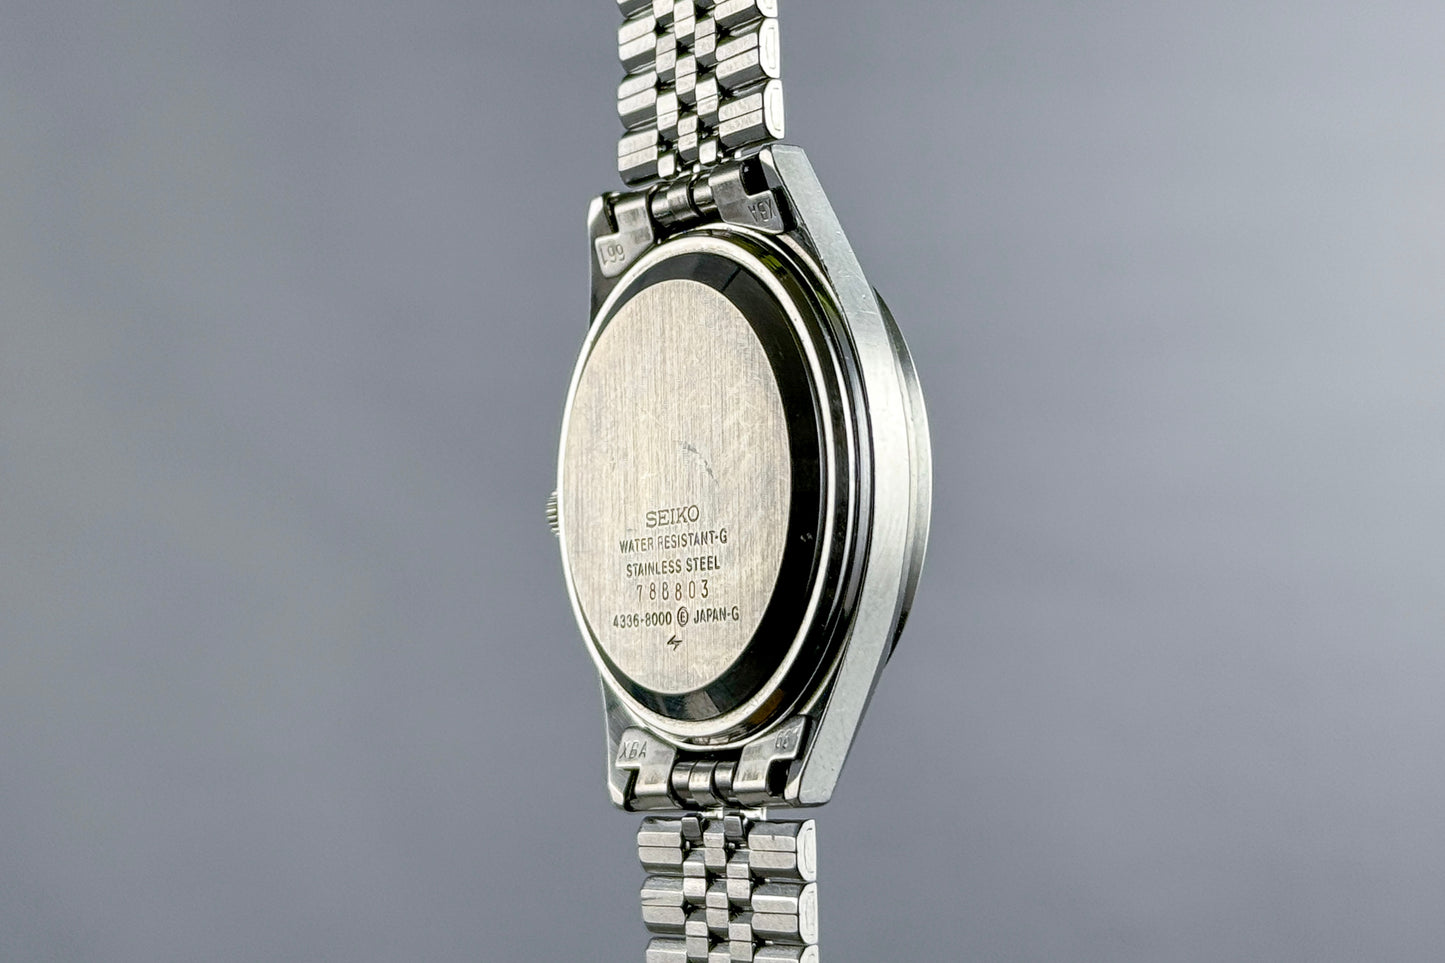 Seiko Quartz Type II 4336-8000 lumeville montre vintage